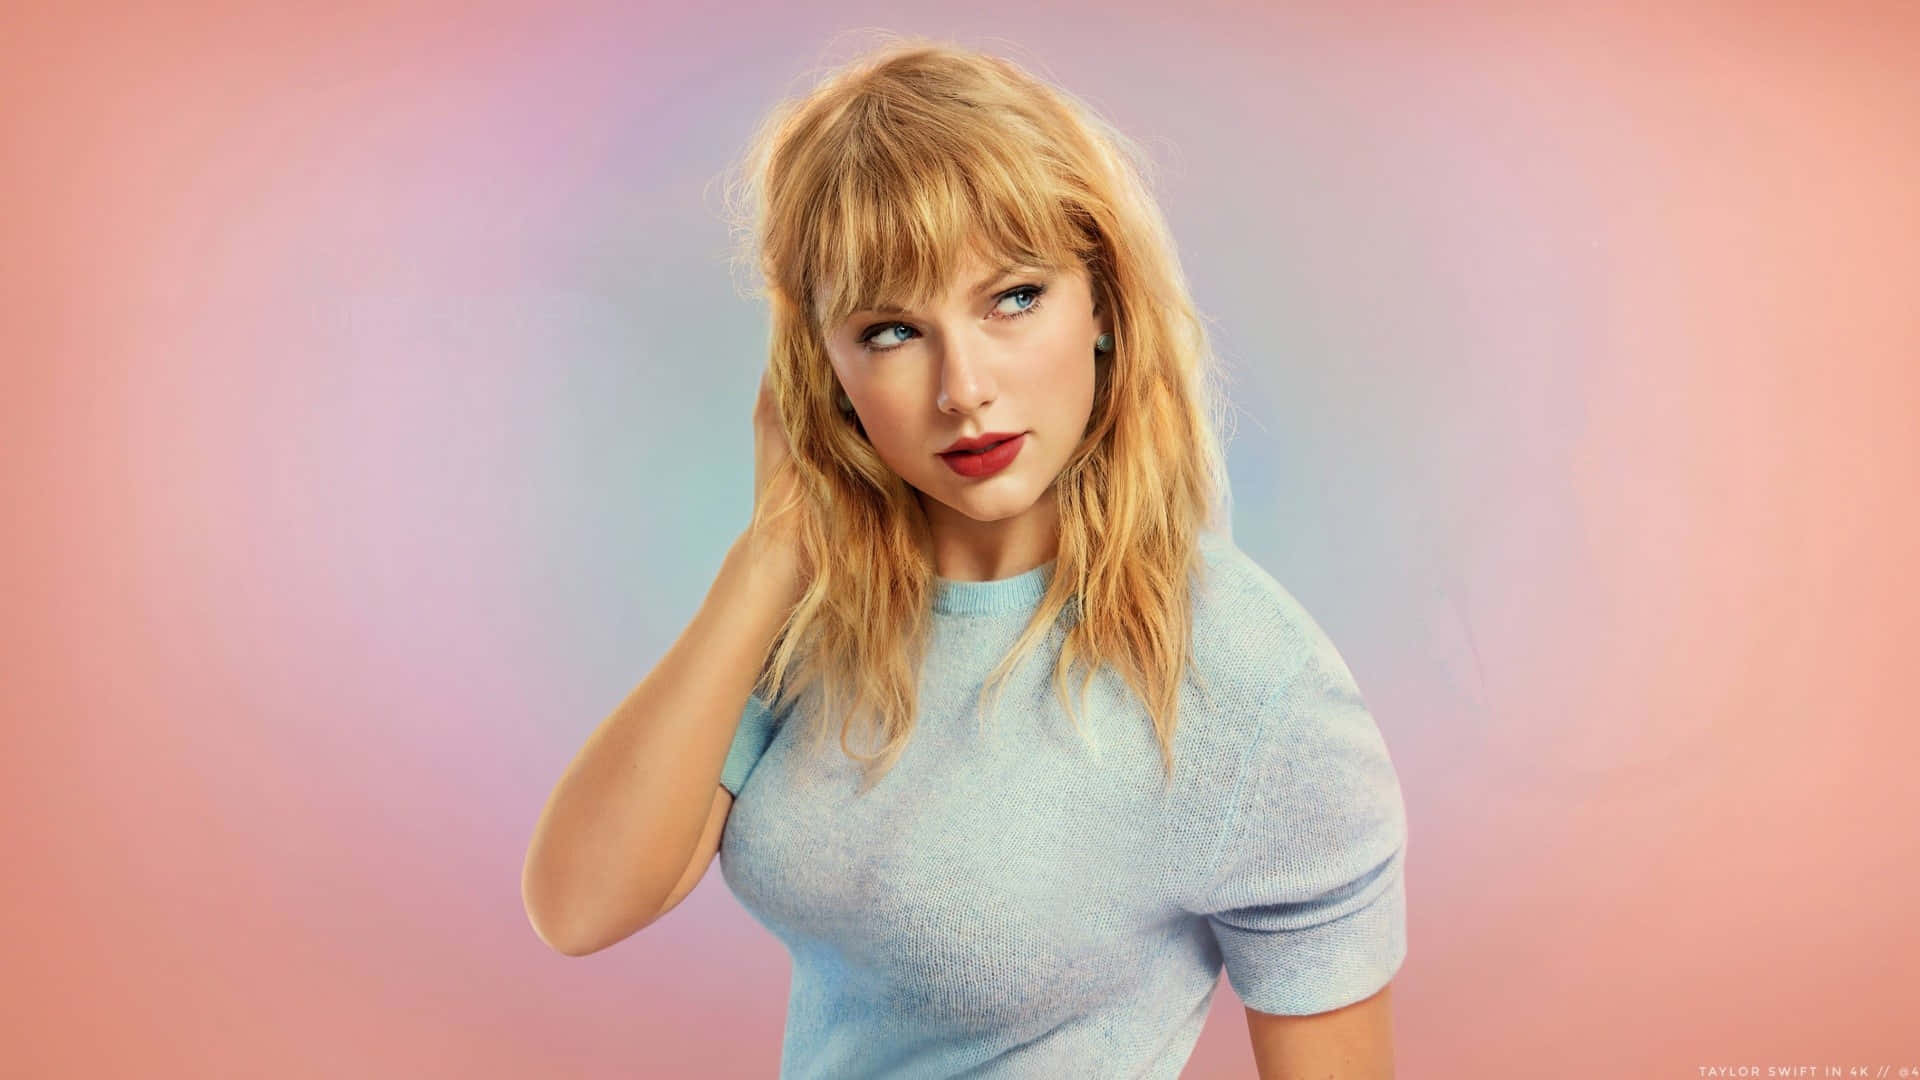 Preppy Taylor Swift Pastel Backdrop Wallpaper